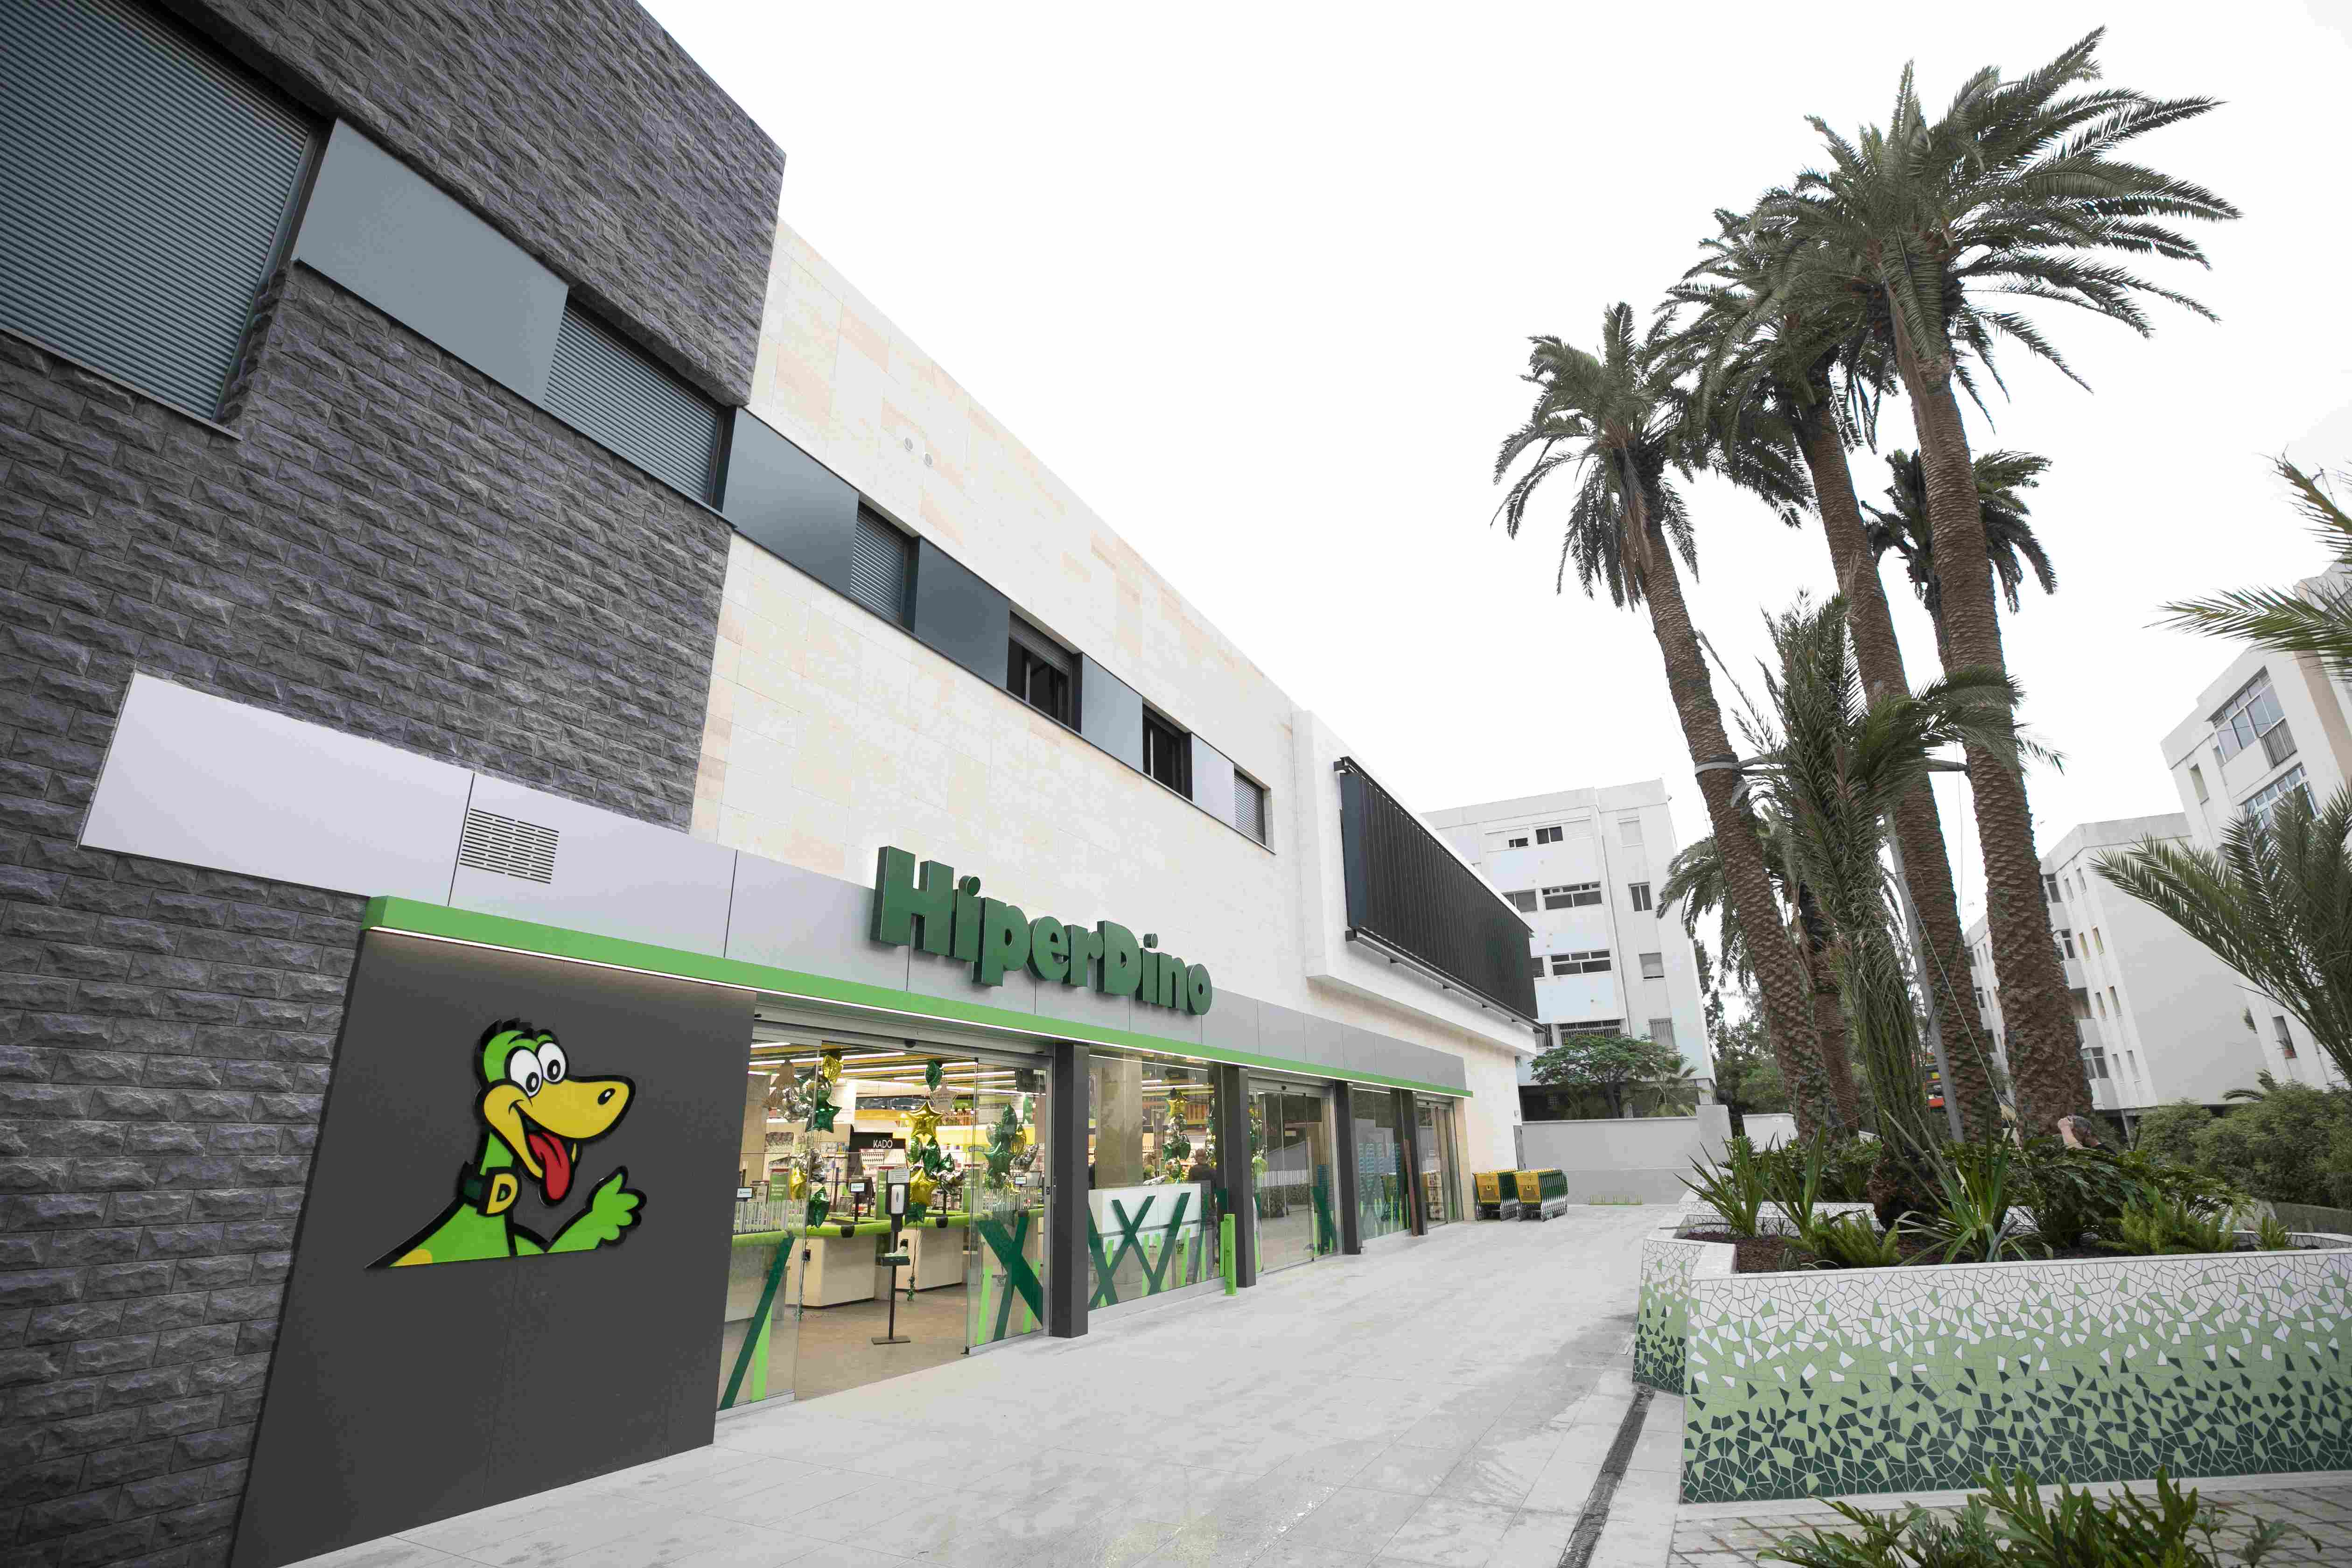 Inauguración de nueva tienda de HiperDino en Las Palmas de Gran Canaria / CanariasNoticias.es